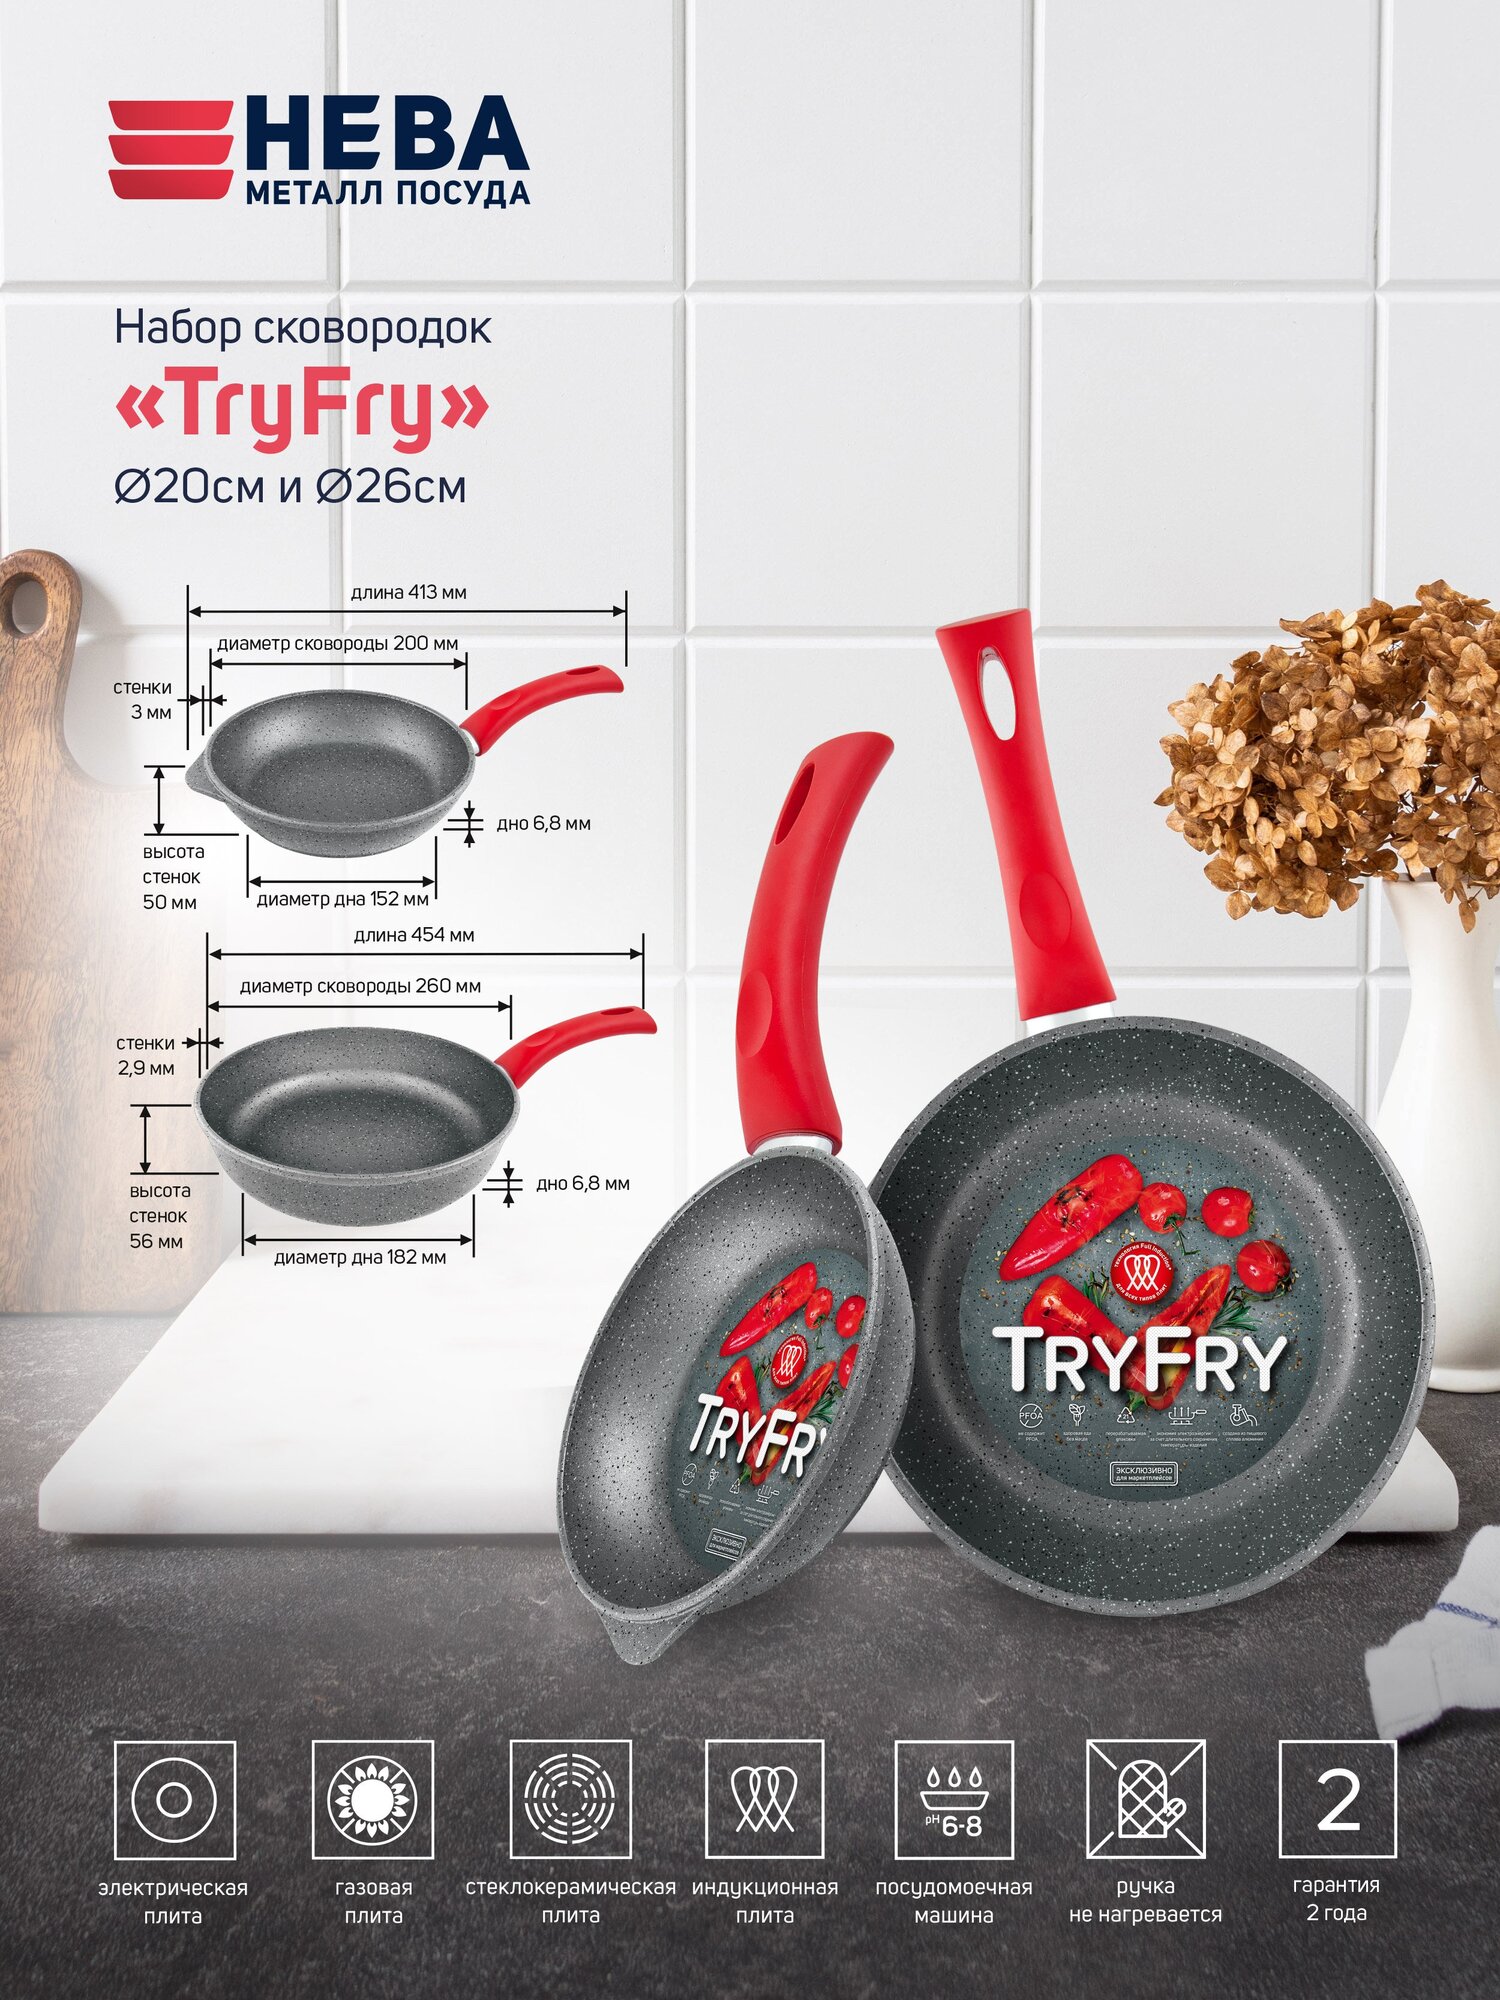 Набор сковородок с антипригарным покрытием для Индукционной плиты "TryFry" Нева Металл Посуда 2 шт